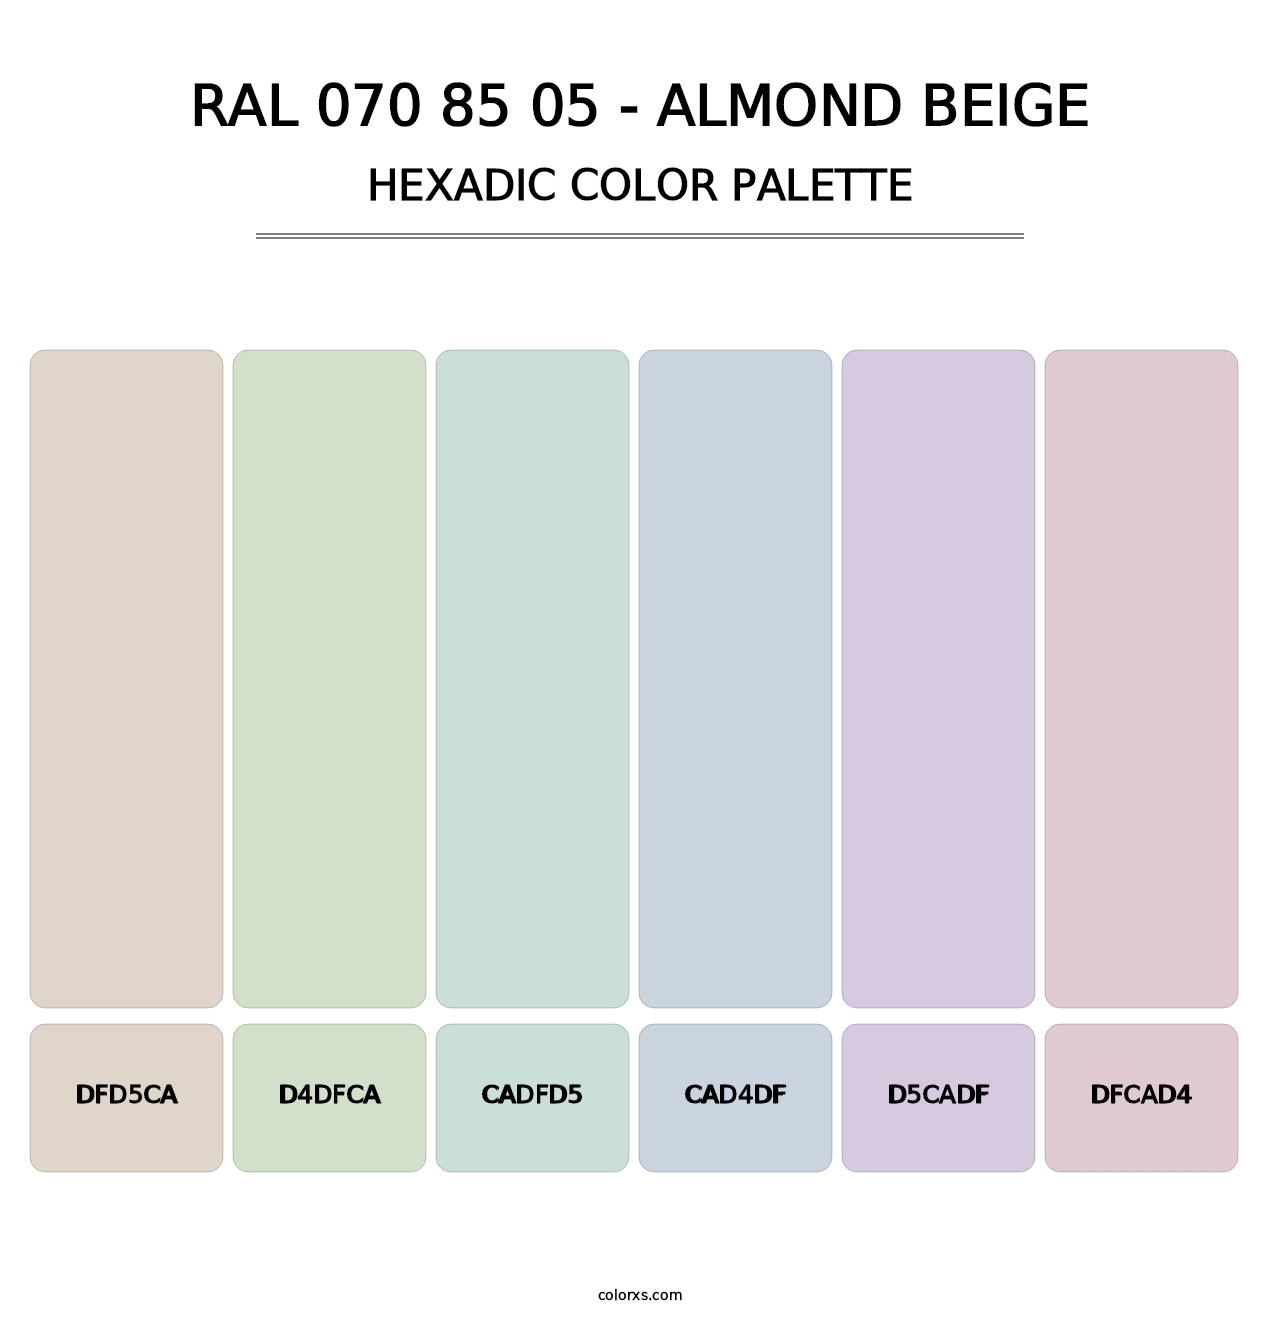 RAL 070 85 05 - Almond Beige - Hexadic Color Palette